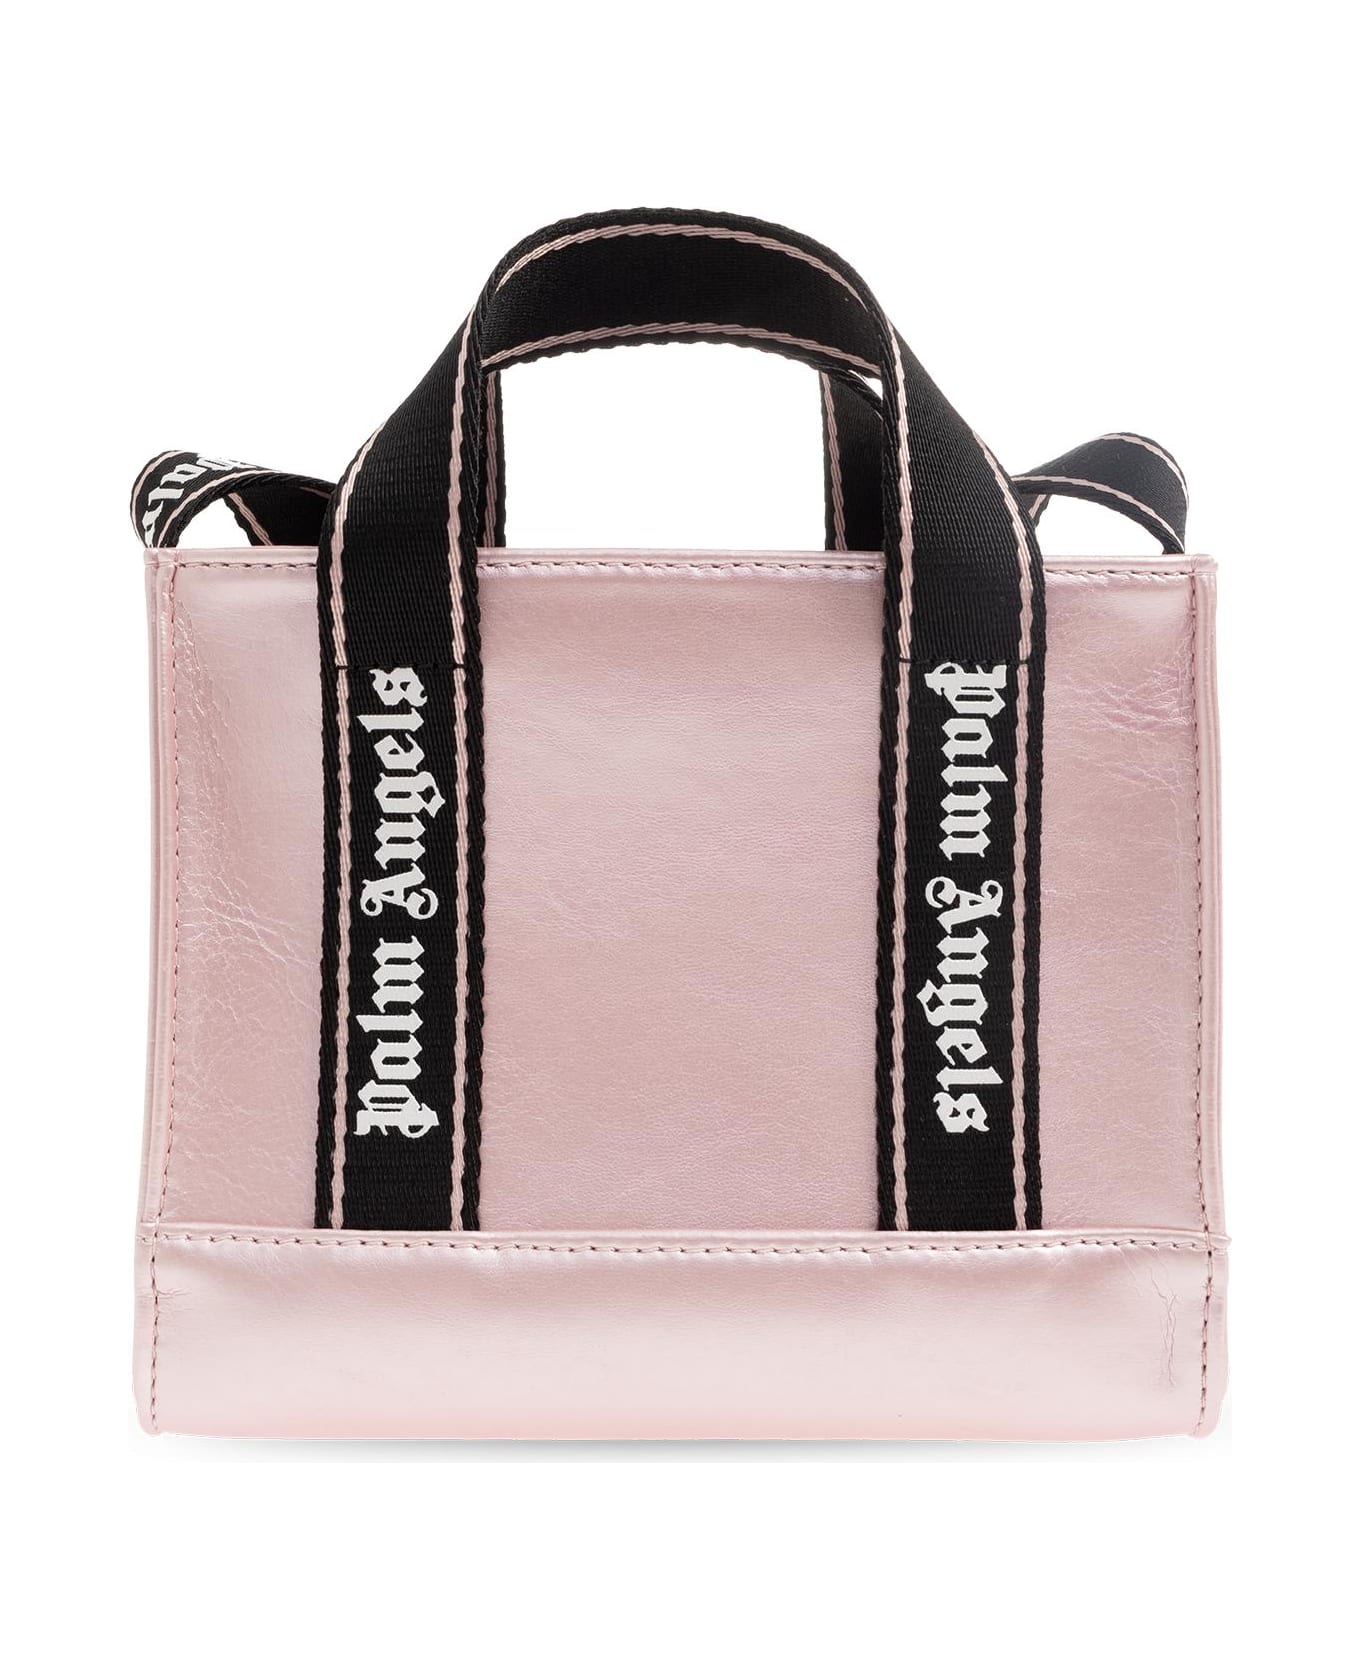 Palm Angels Kids Shoulder Bag With Logo - Pink Black